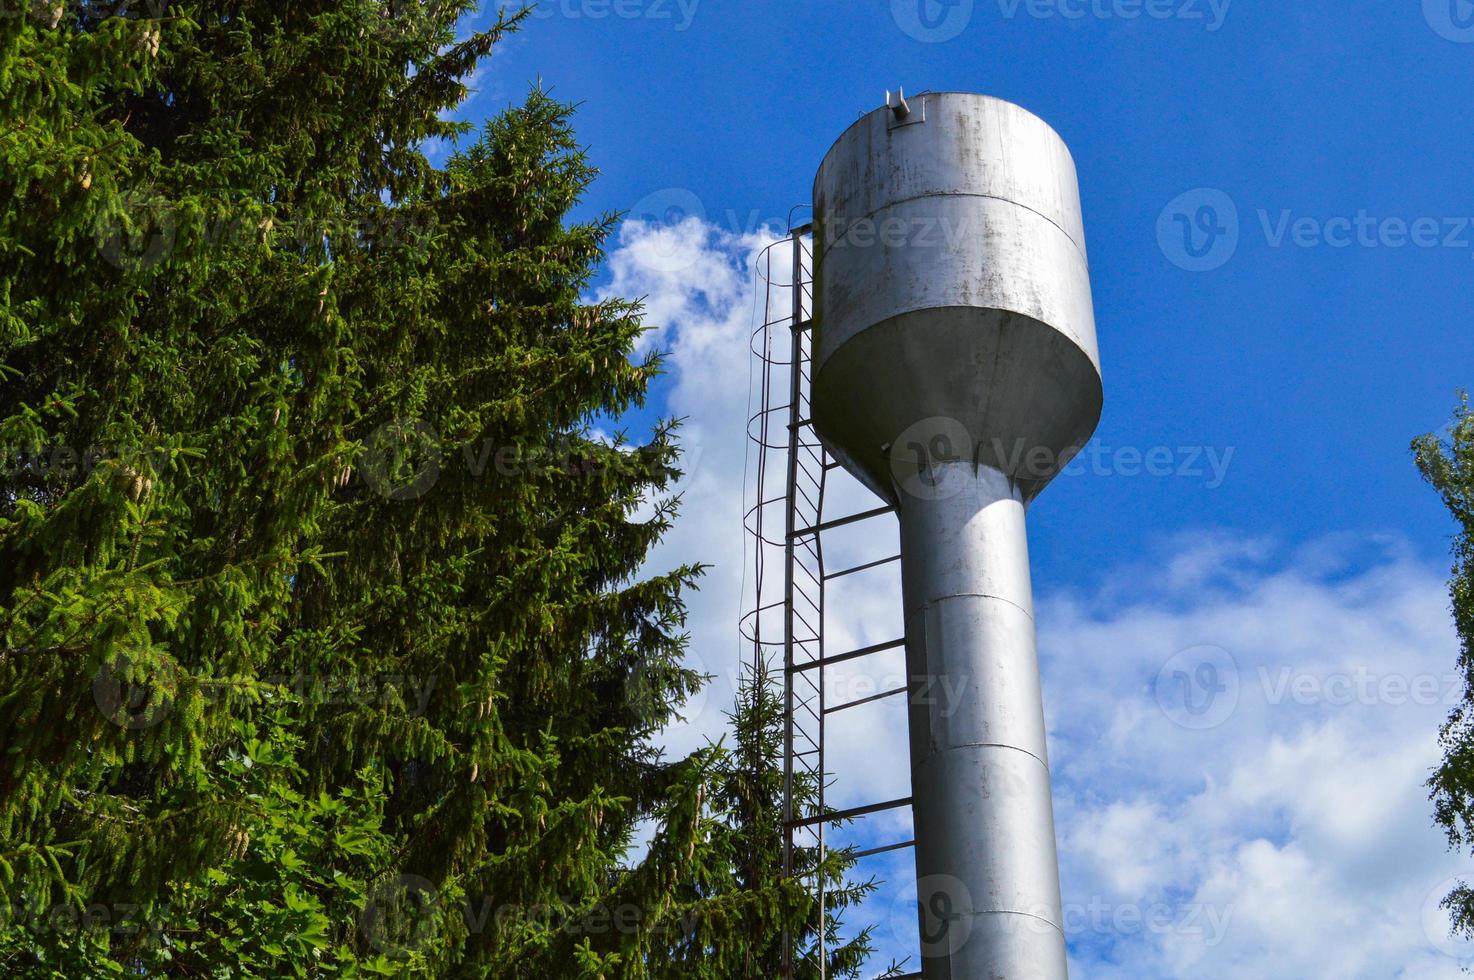 grande torre de água industrial inoxidável brilhante de metal de ferro para fornecimento de água com grande capacidade, barril contra o céu azul e árvores foto